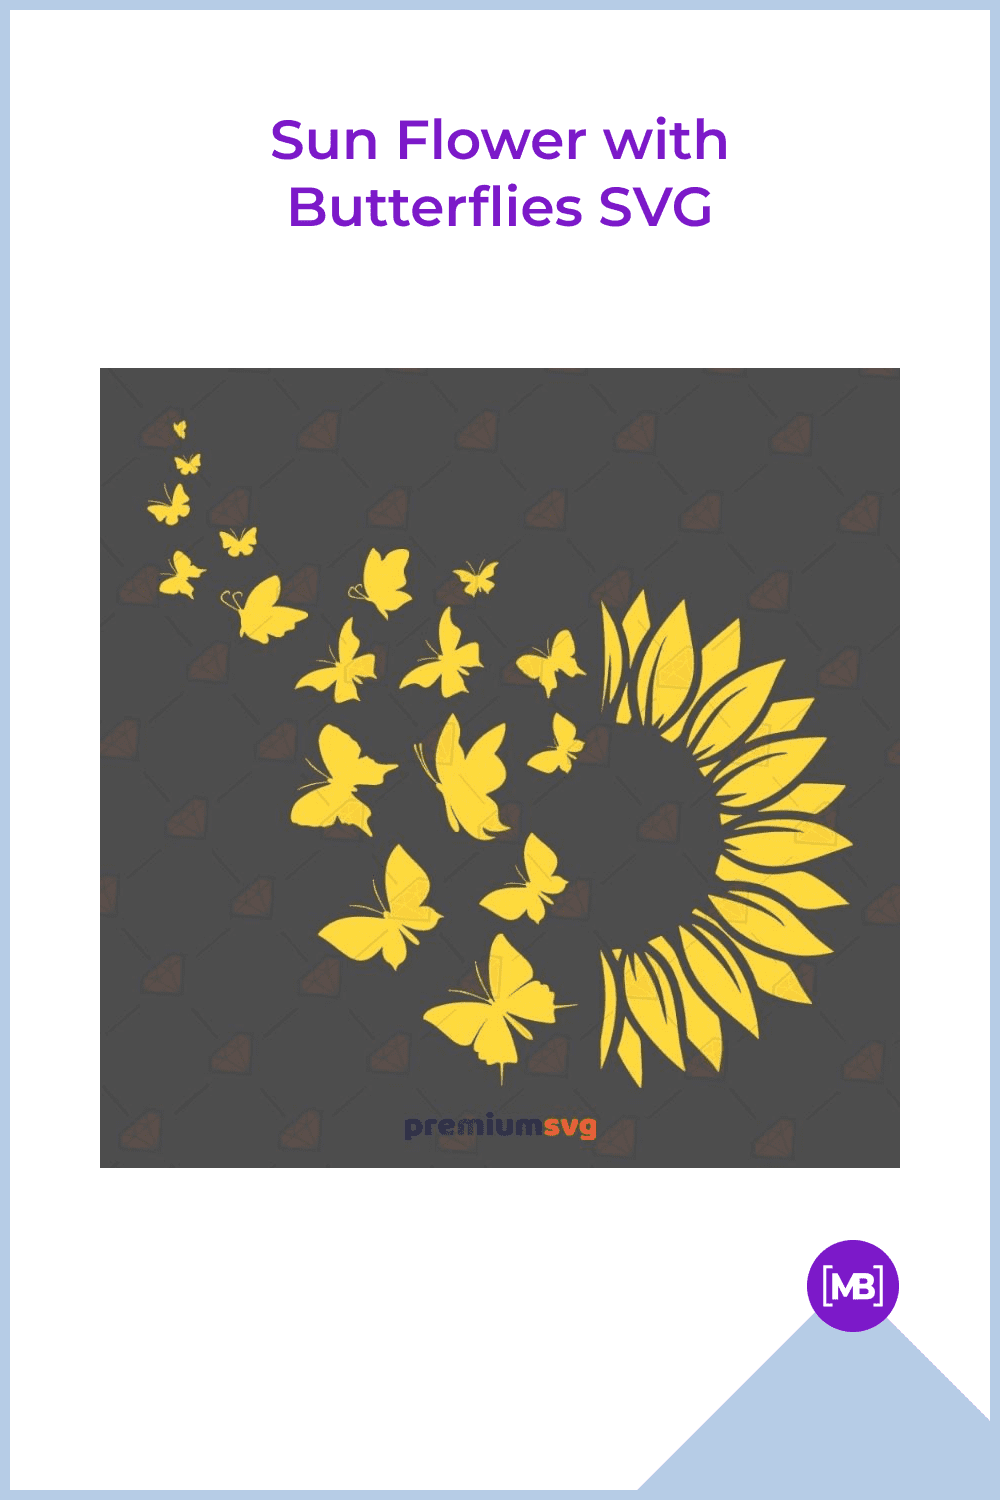 Sun Flower with Butterflies SVG.